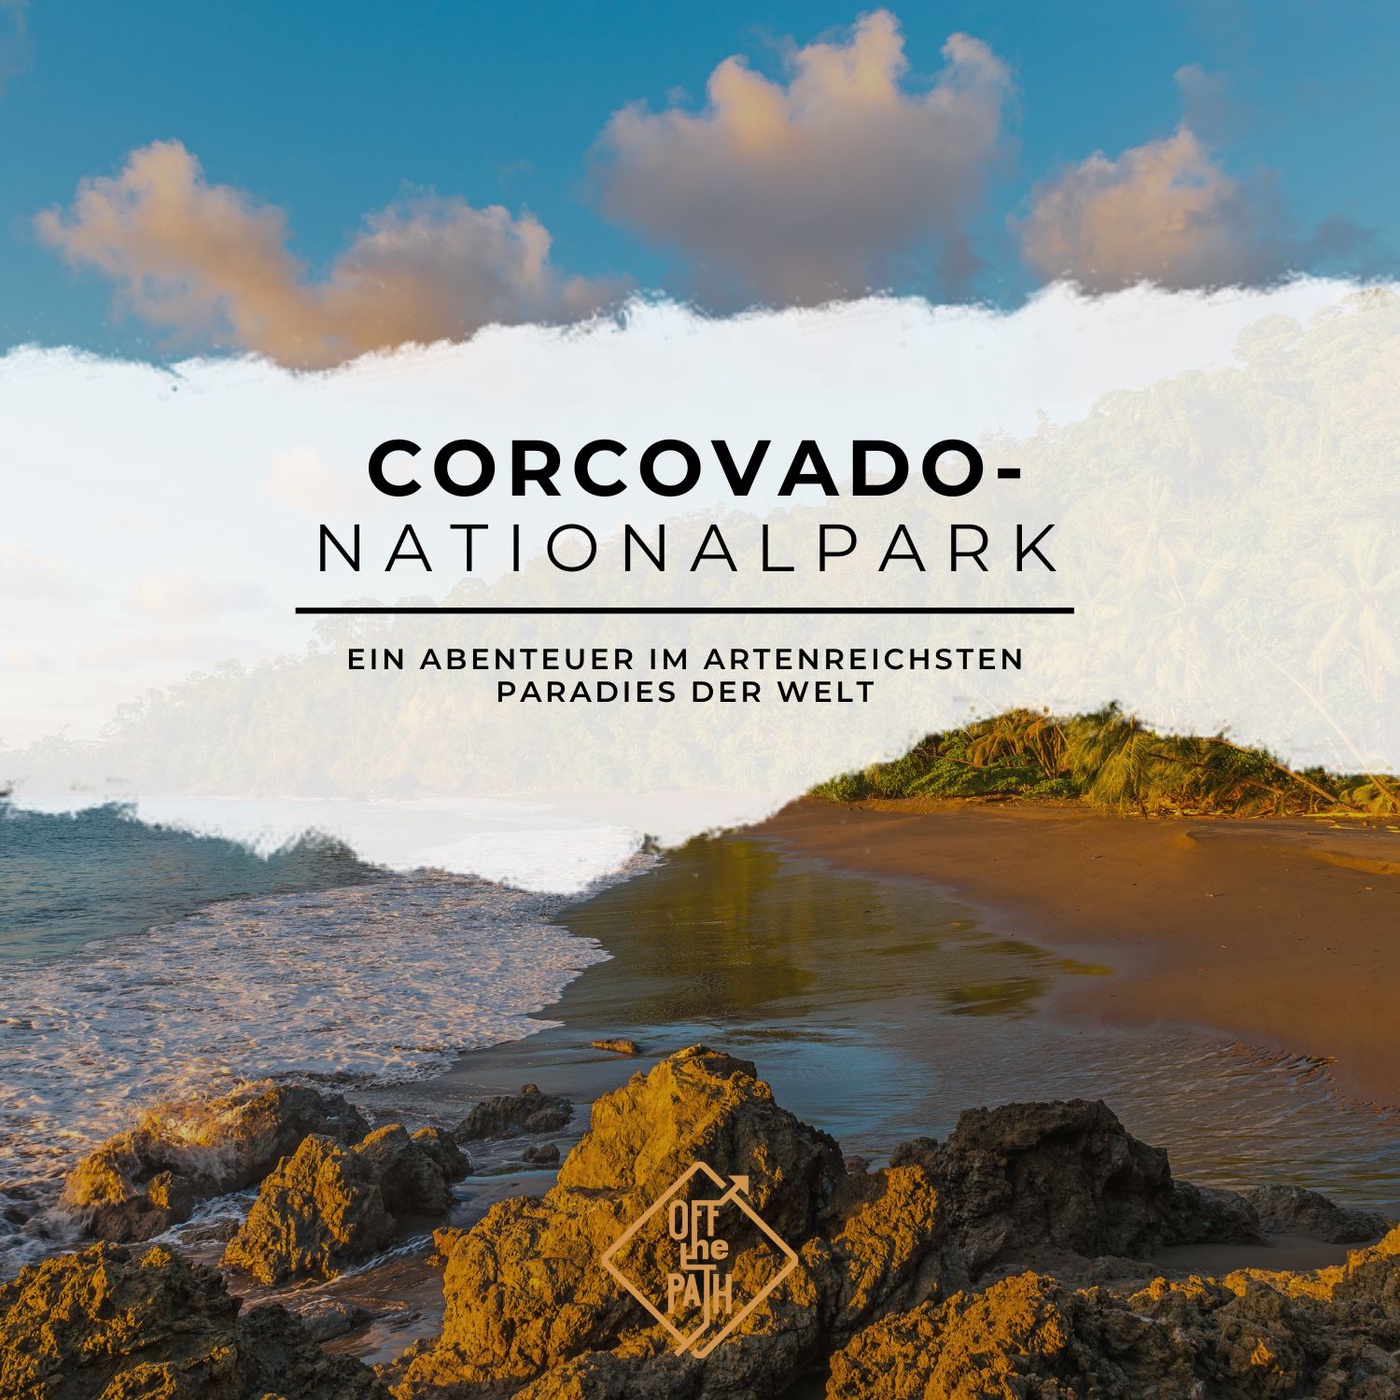 Corcovado-Nationalpark: Ein Abenteuer im artenreichsten Paradies der Welt